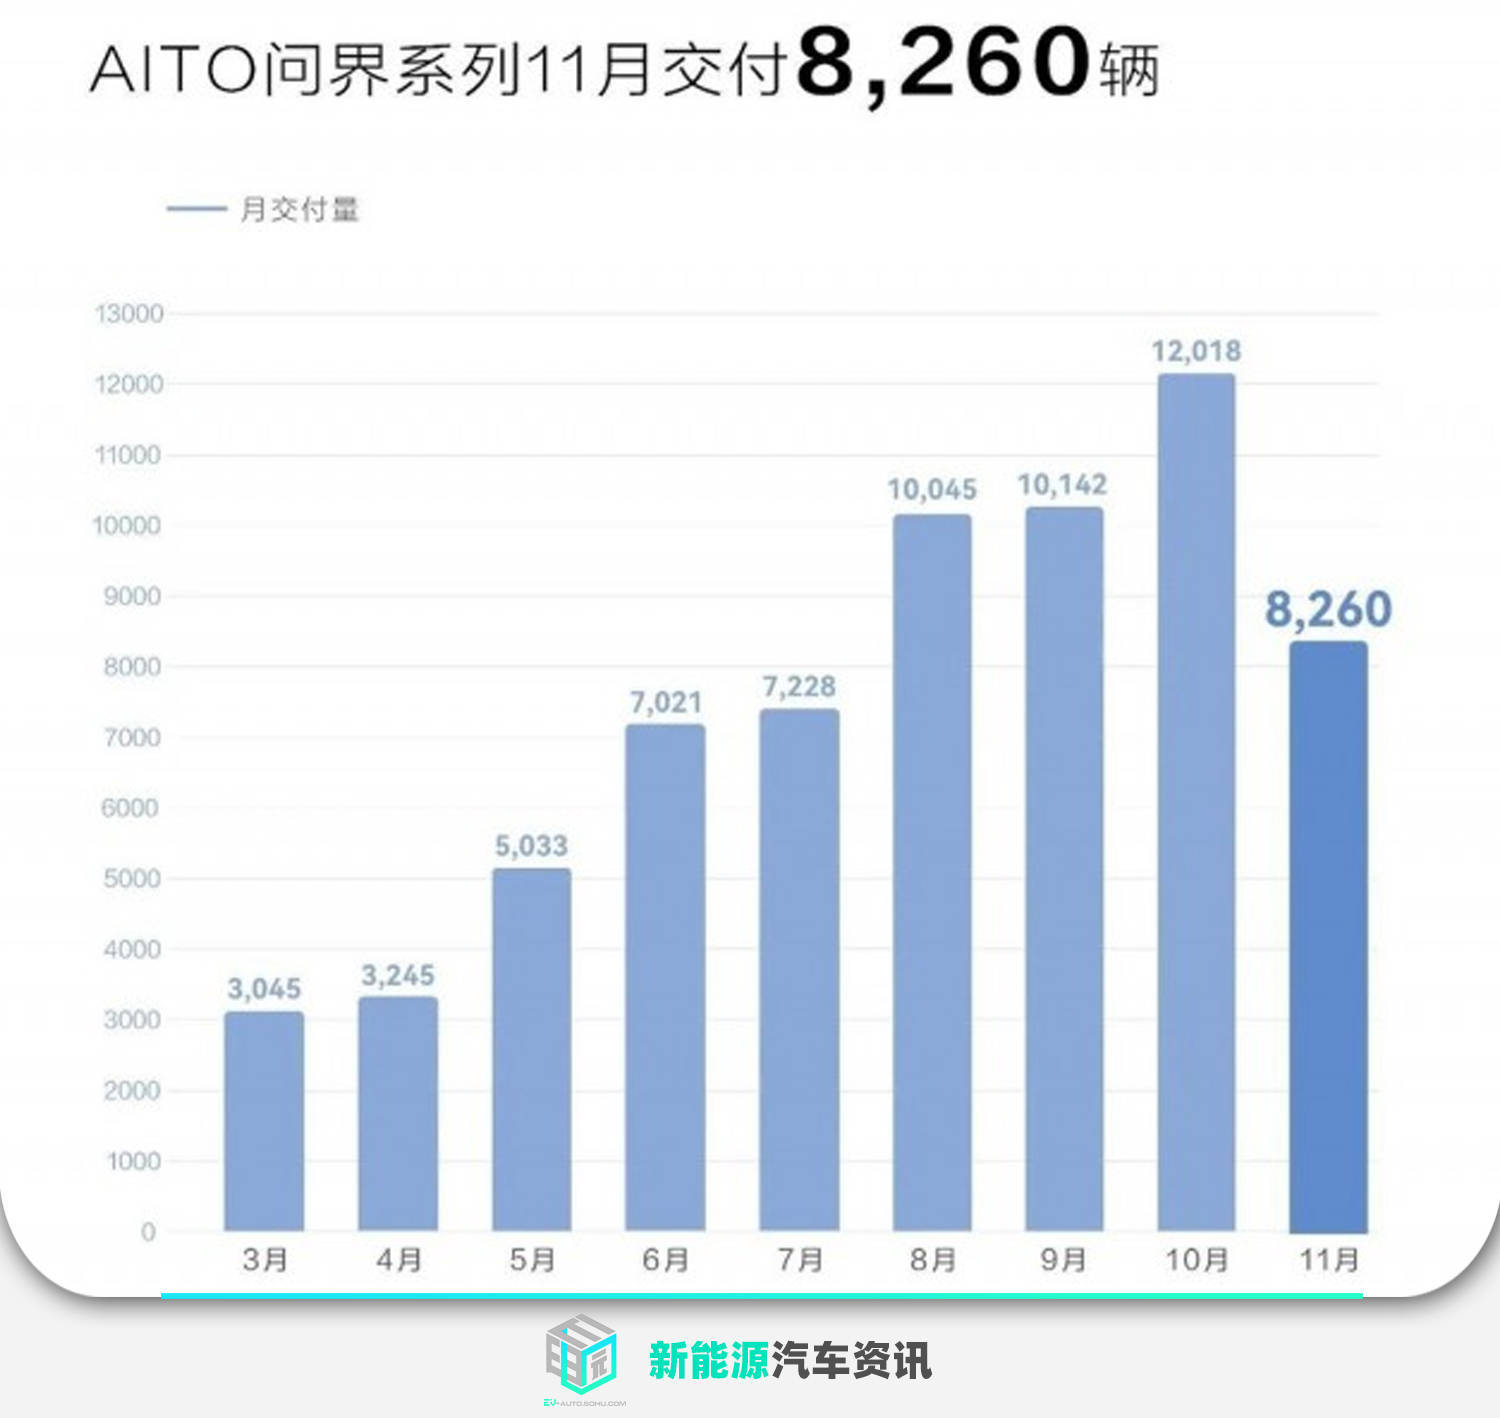 重庆手机回收报价华为
:生产交付受到影响 AITO问界11月交付8260辆-第2张图片-太平洋在线下载